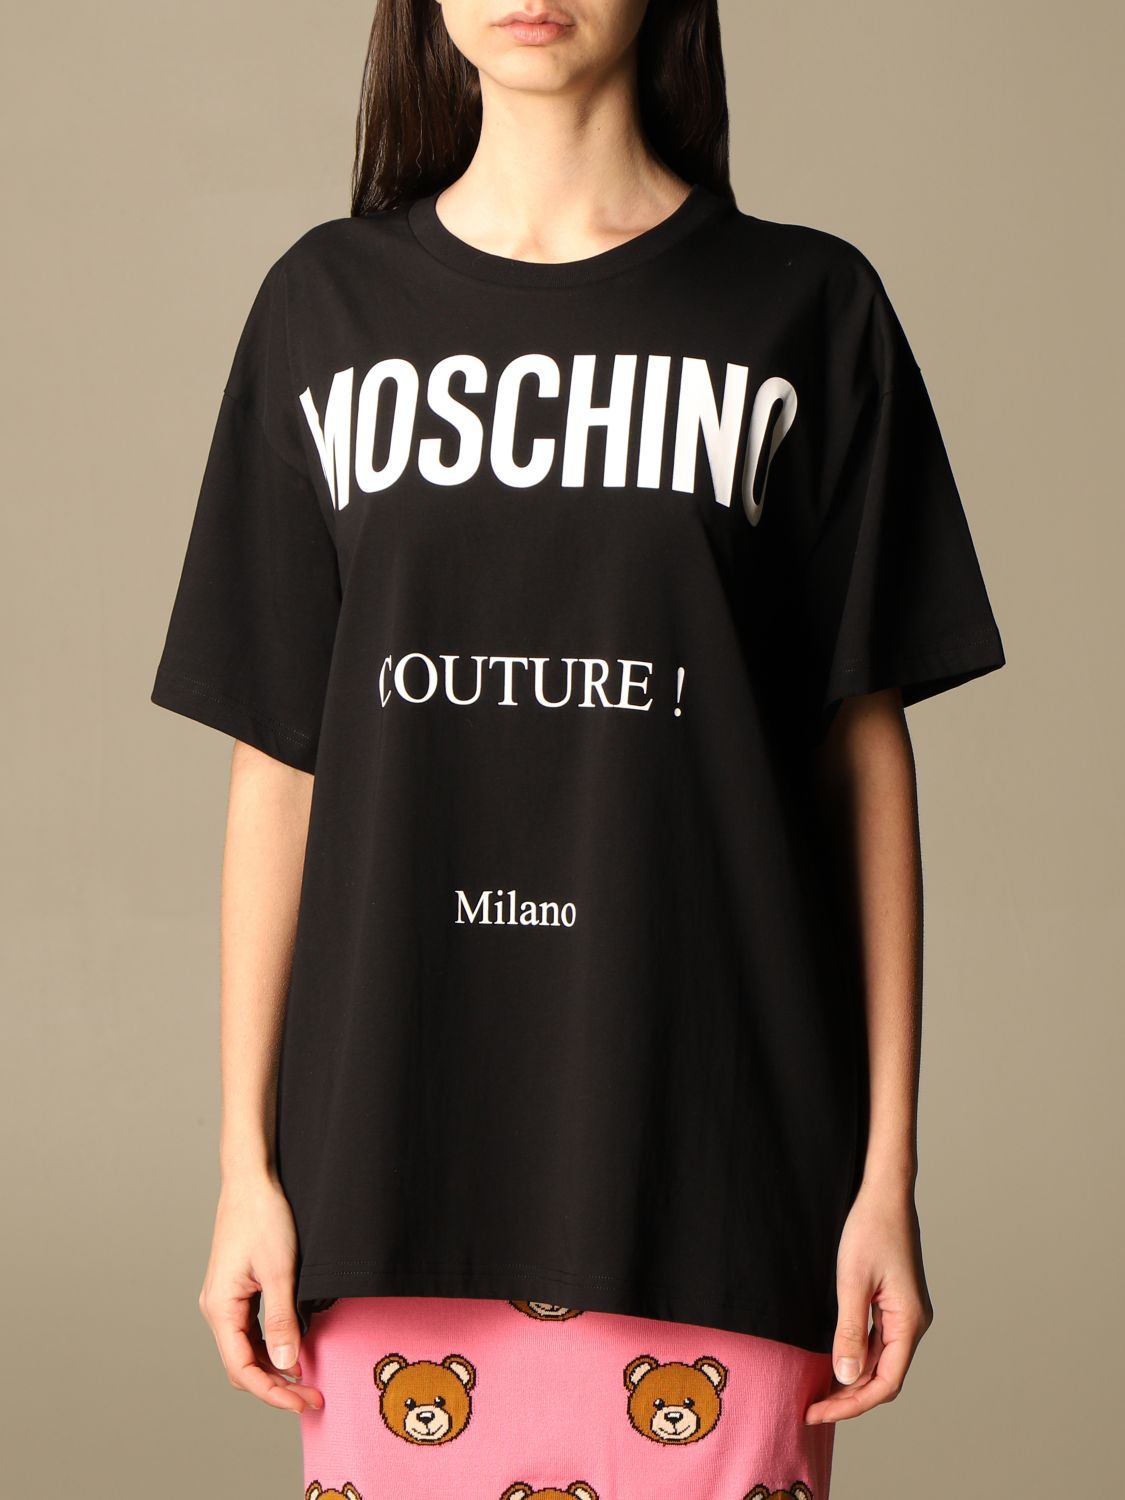 moschino couture t shirt women's